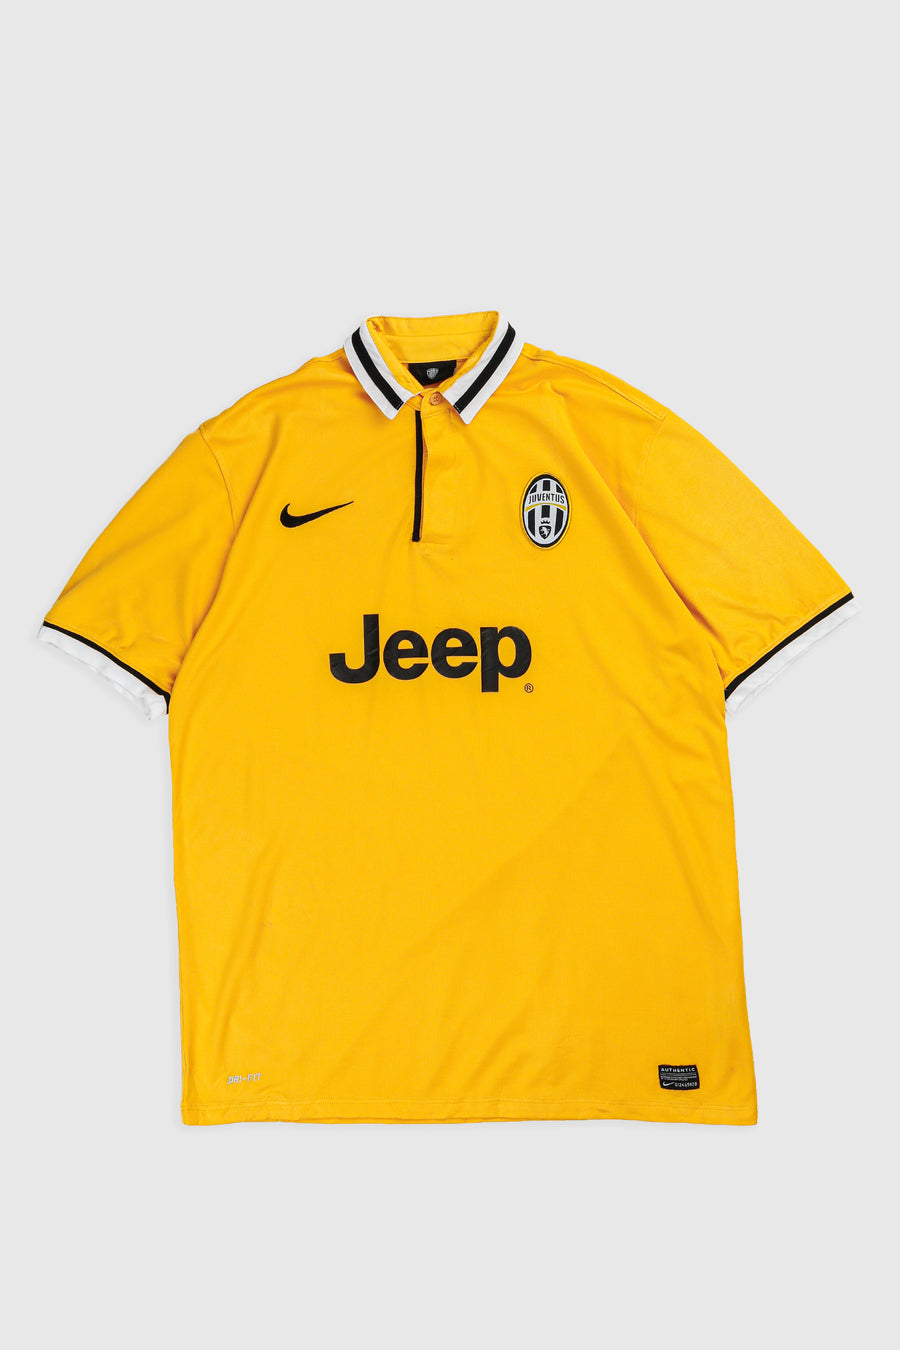 Vintage Juventus Soccer Jersey - XL